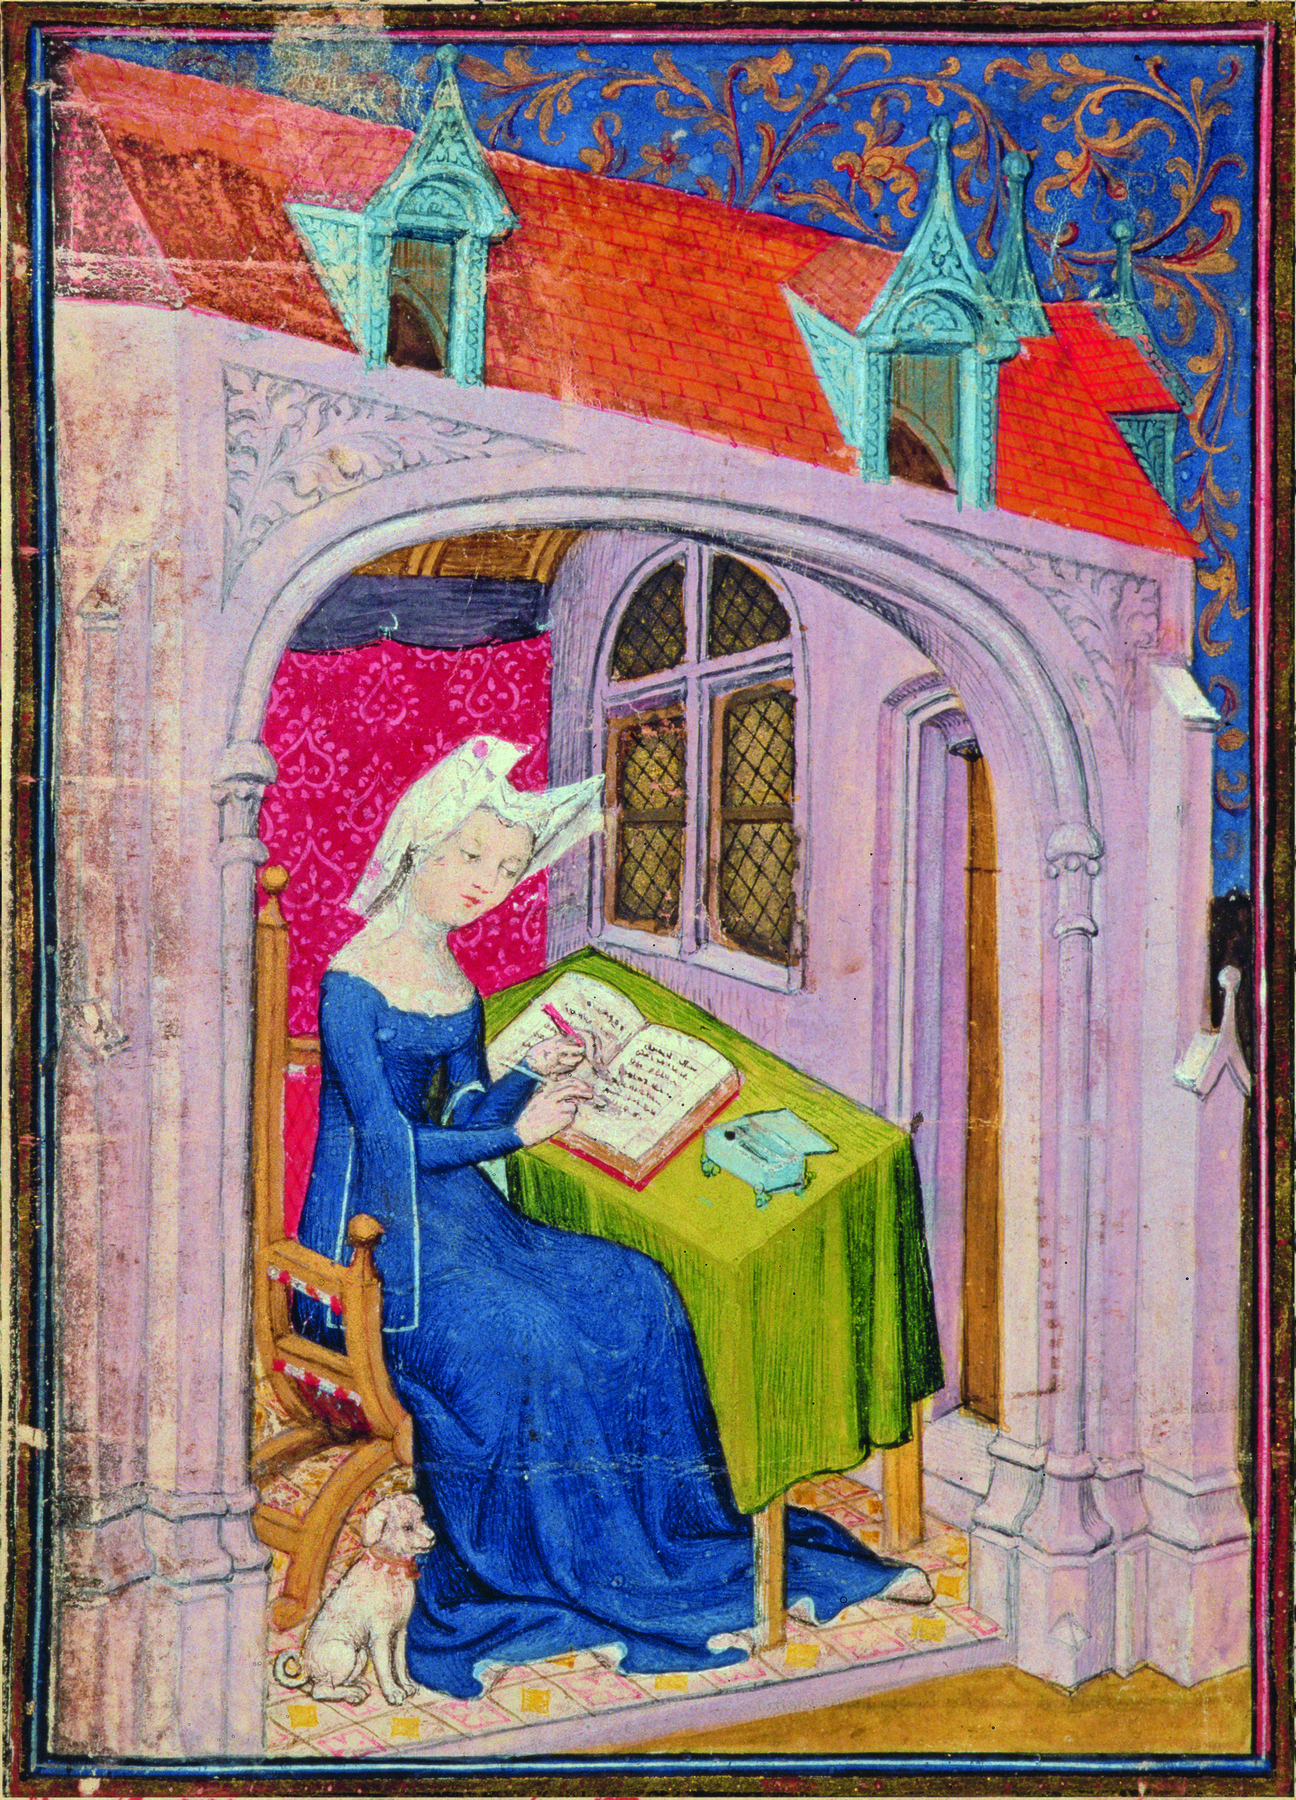 Ilustração. Dentro de uma casa, mulher sentada diante de uma mesa com uma toalha verde, escrevendo em um caderno. Ela usa vestido longo azul e um chapéu branco na cabeça. Aos seus pés, há um pequeno cachorro sentado.